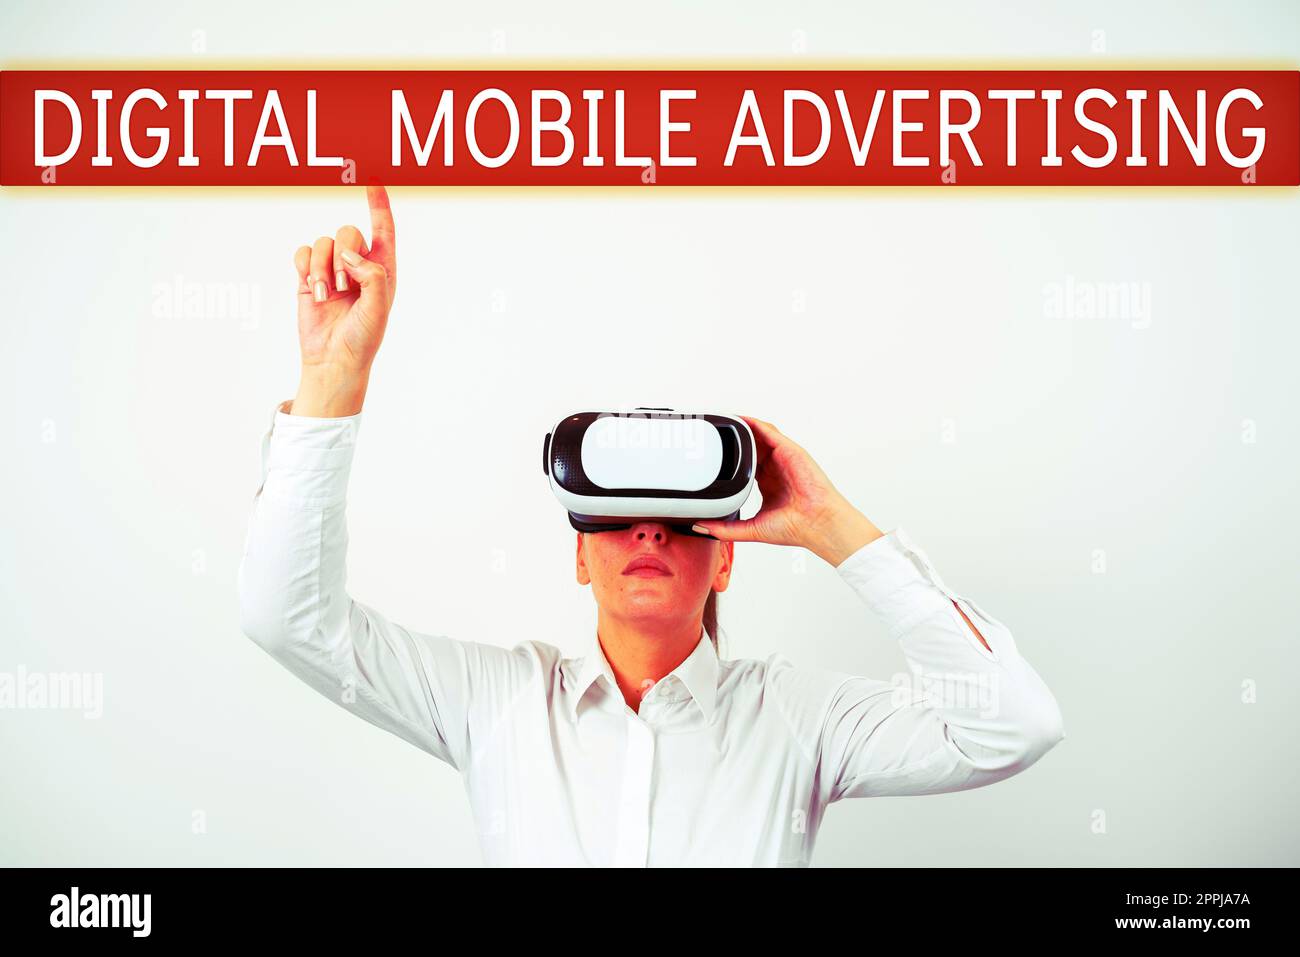 Inspiration für die digitale mobile Werbung von Signage. Digitalisierte Inhalte, die über das Internet übertragen werden können Stockfoto